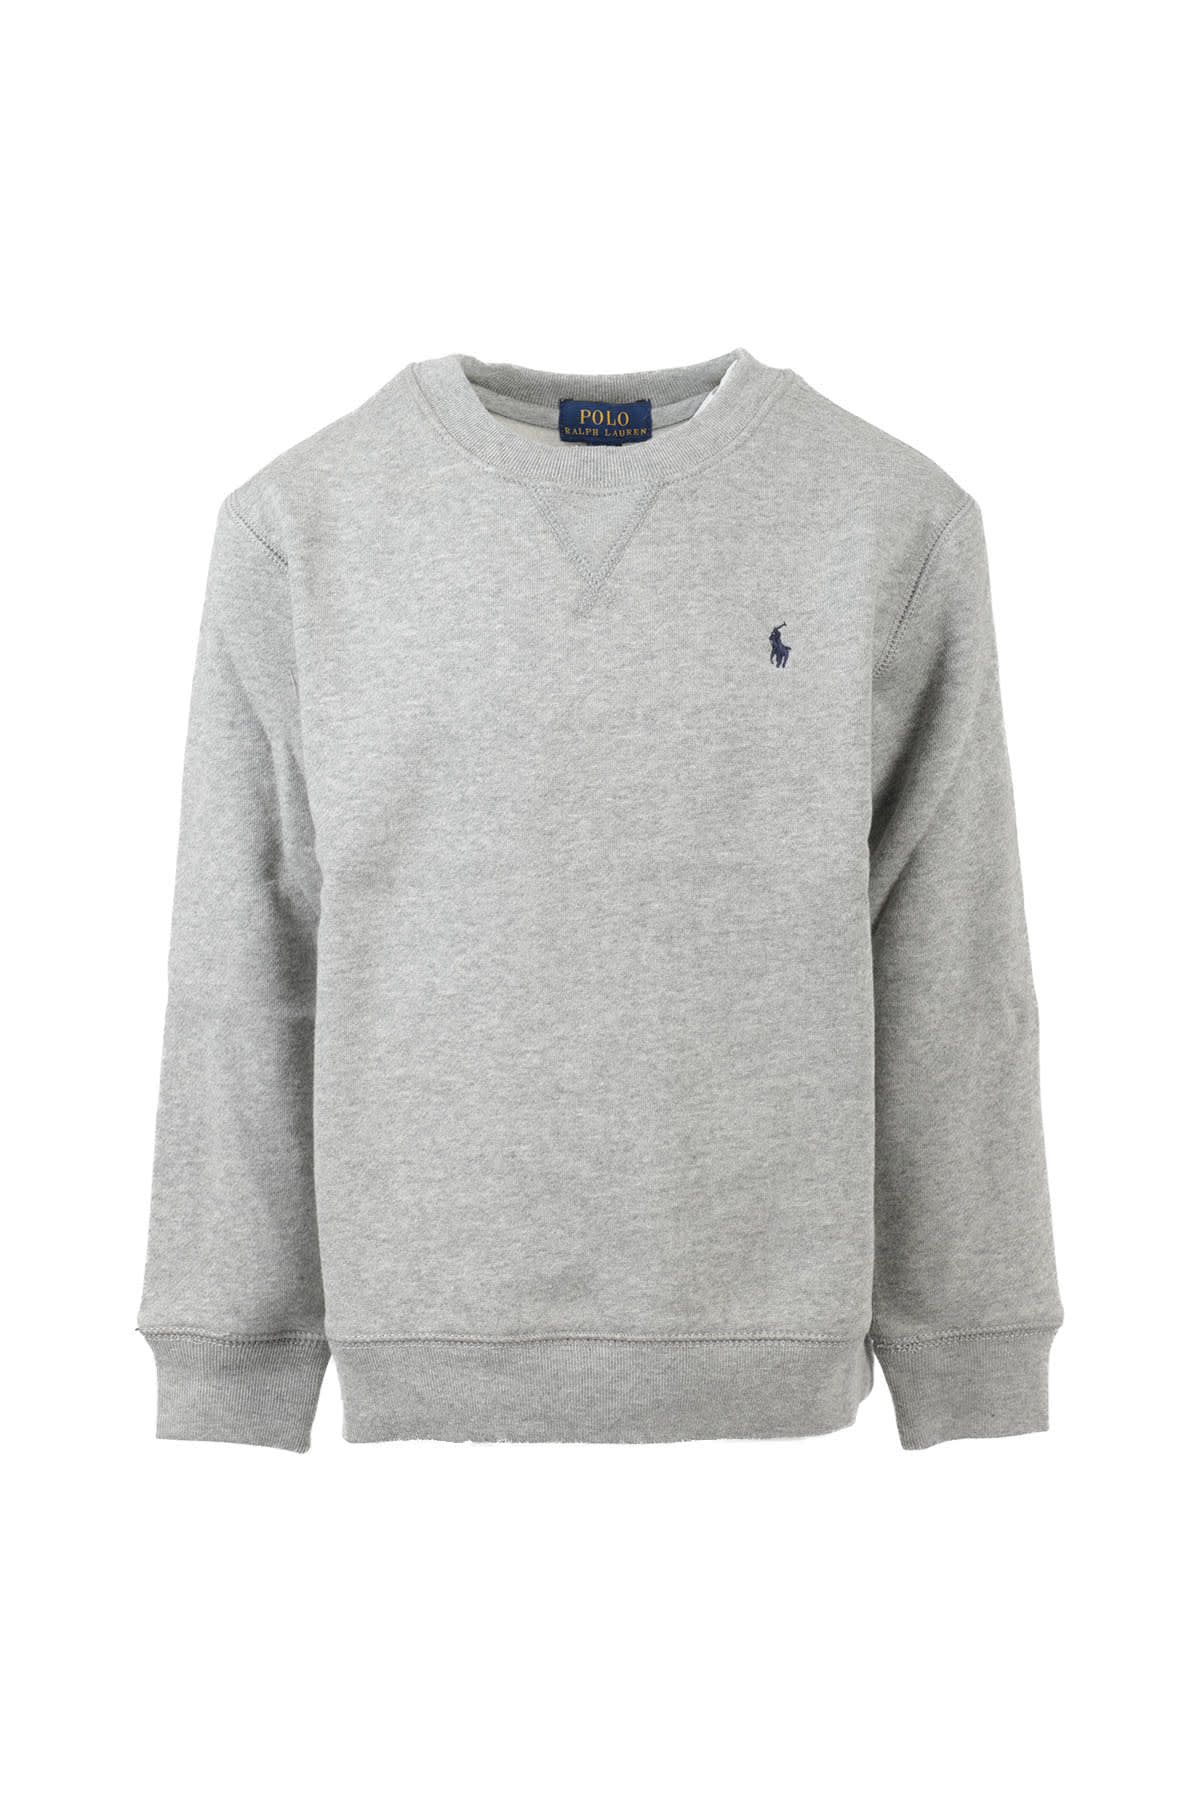 Polo Ralph Lauren Kids' Sweatshirt In Grey